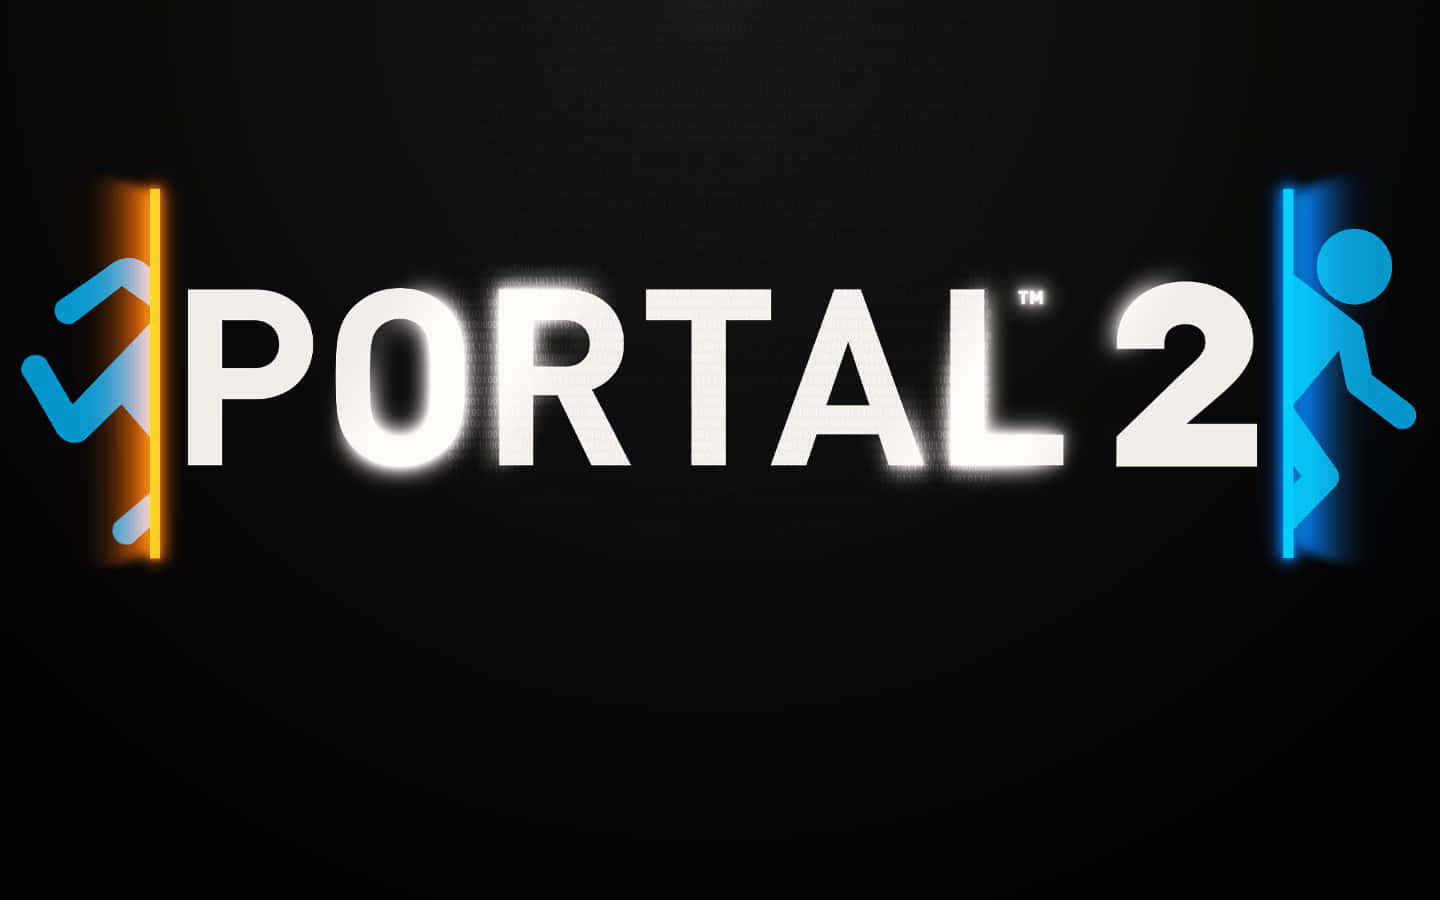 Portal2 - Computer - Computer - Computer - Computer - Computer - Computer